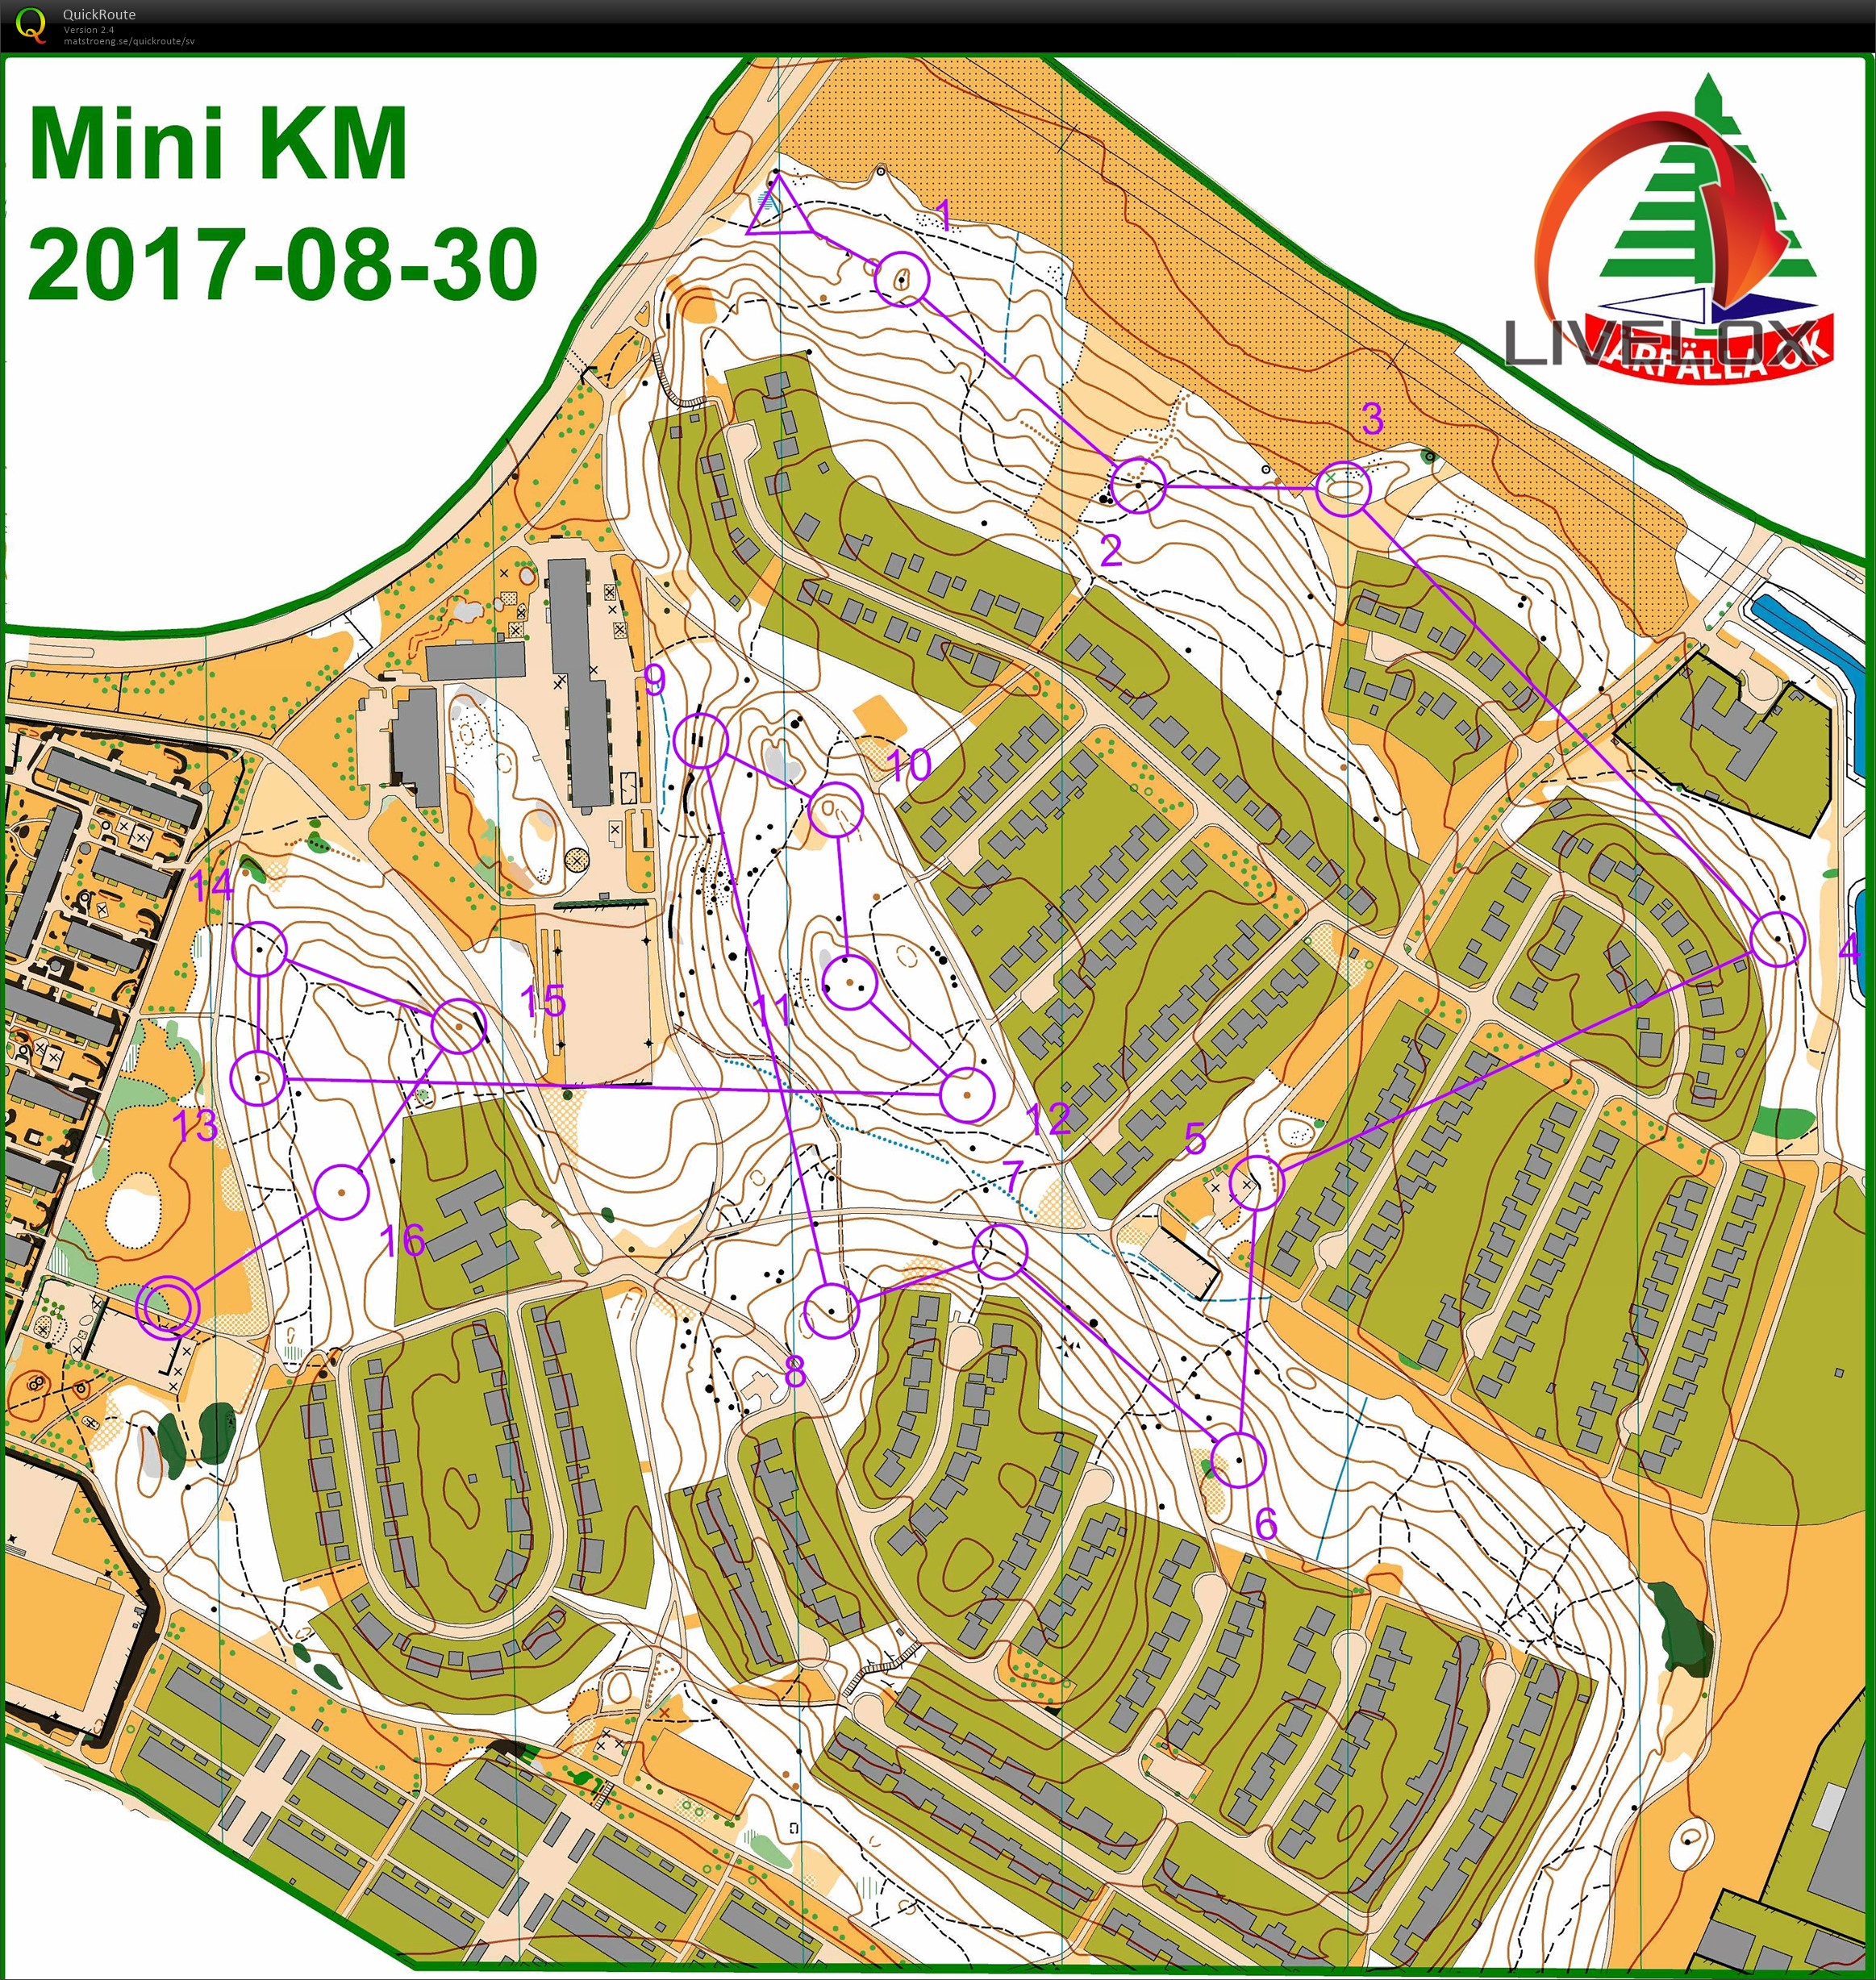 Mini-KM (2017-08-30)